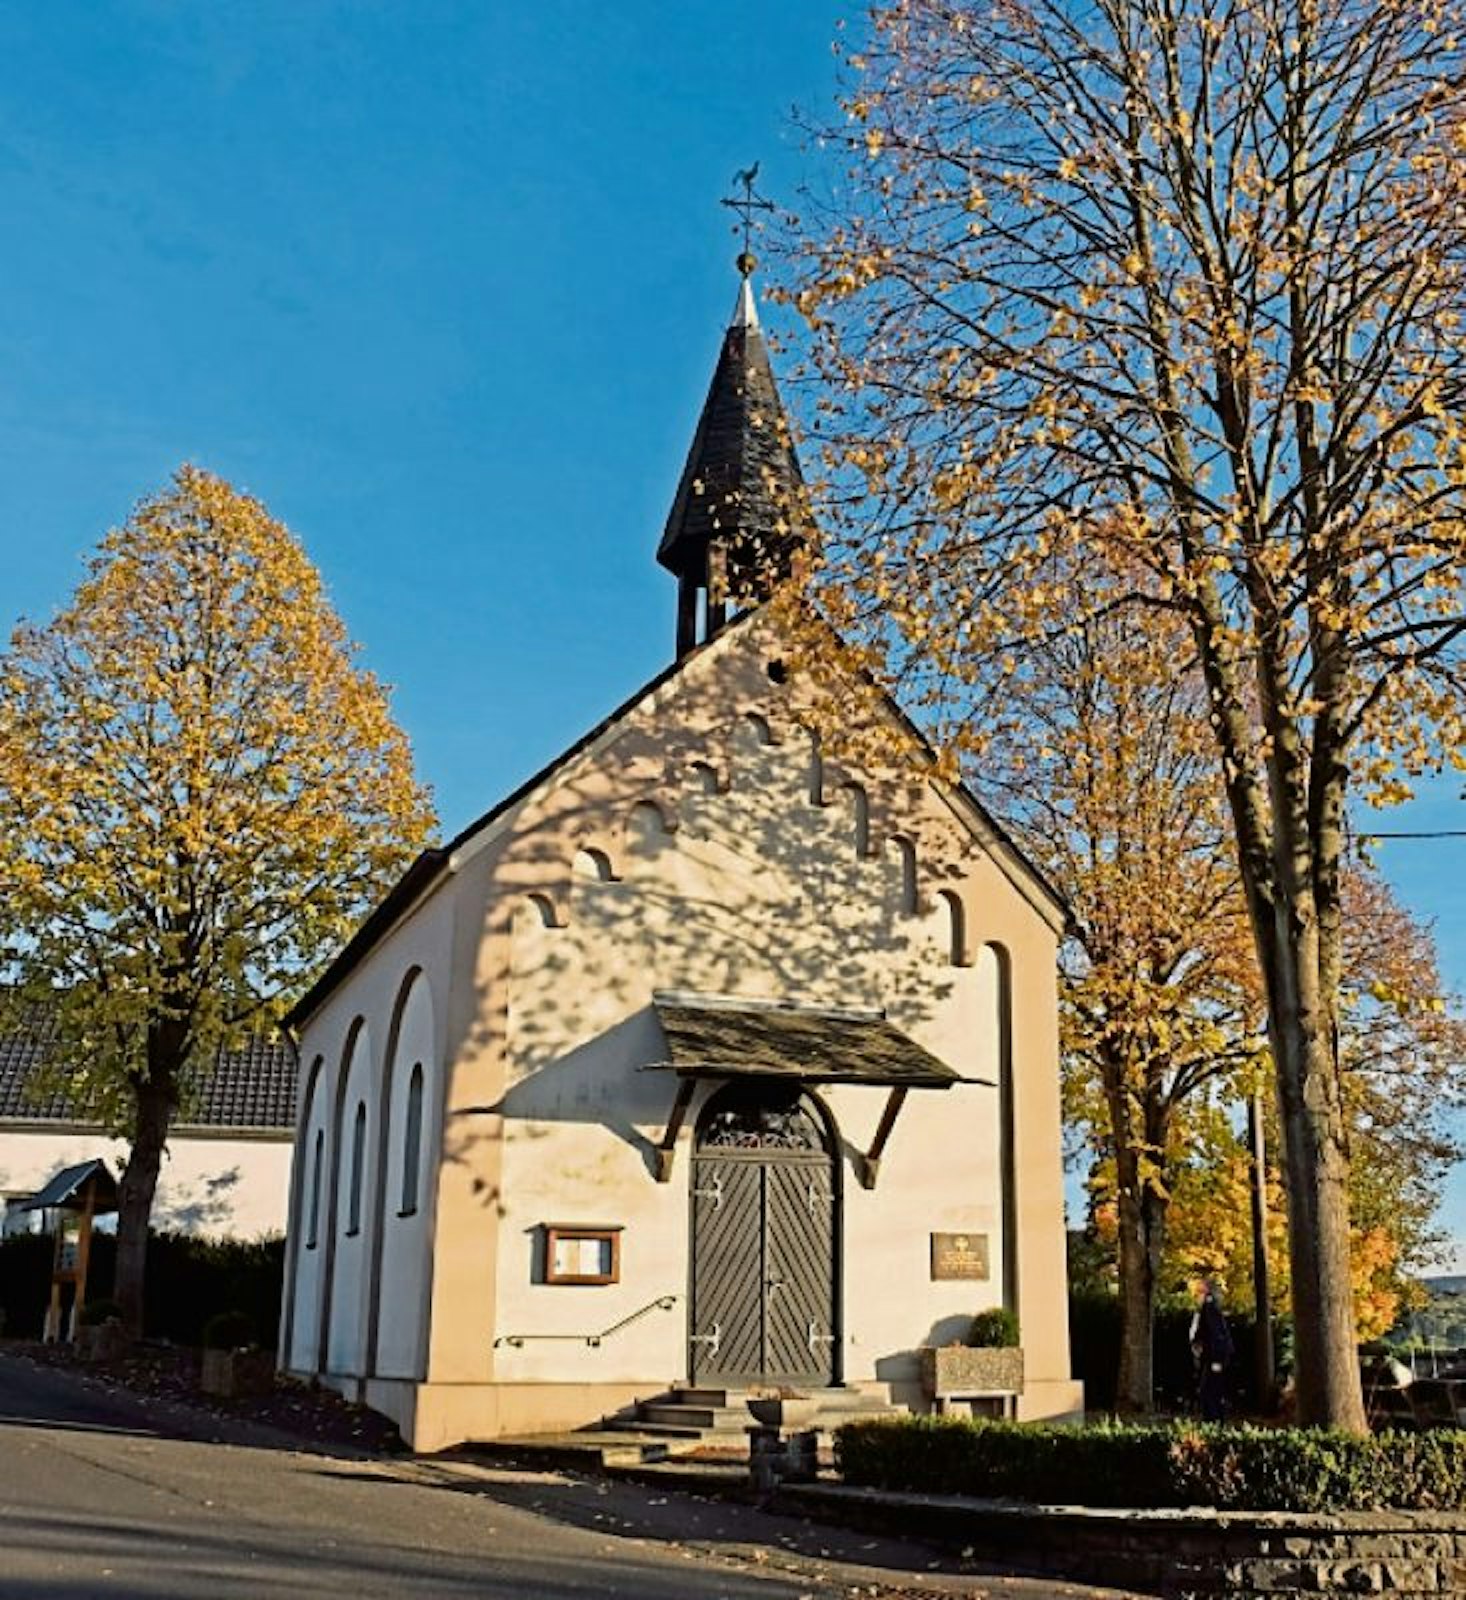 Die Kapelle in Quirrenbach steht am Rande der Fünf-Bäche-Wanderung durch das Siebengebirge bei Königswinter. Dort begeistert die tolle Landschaft die Wanderer.